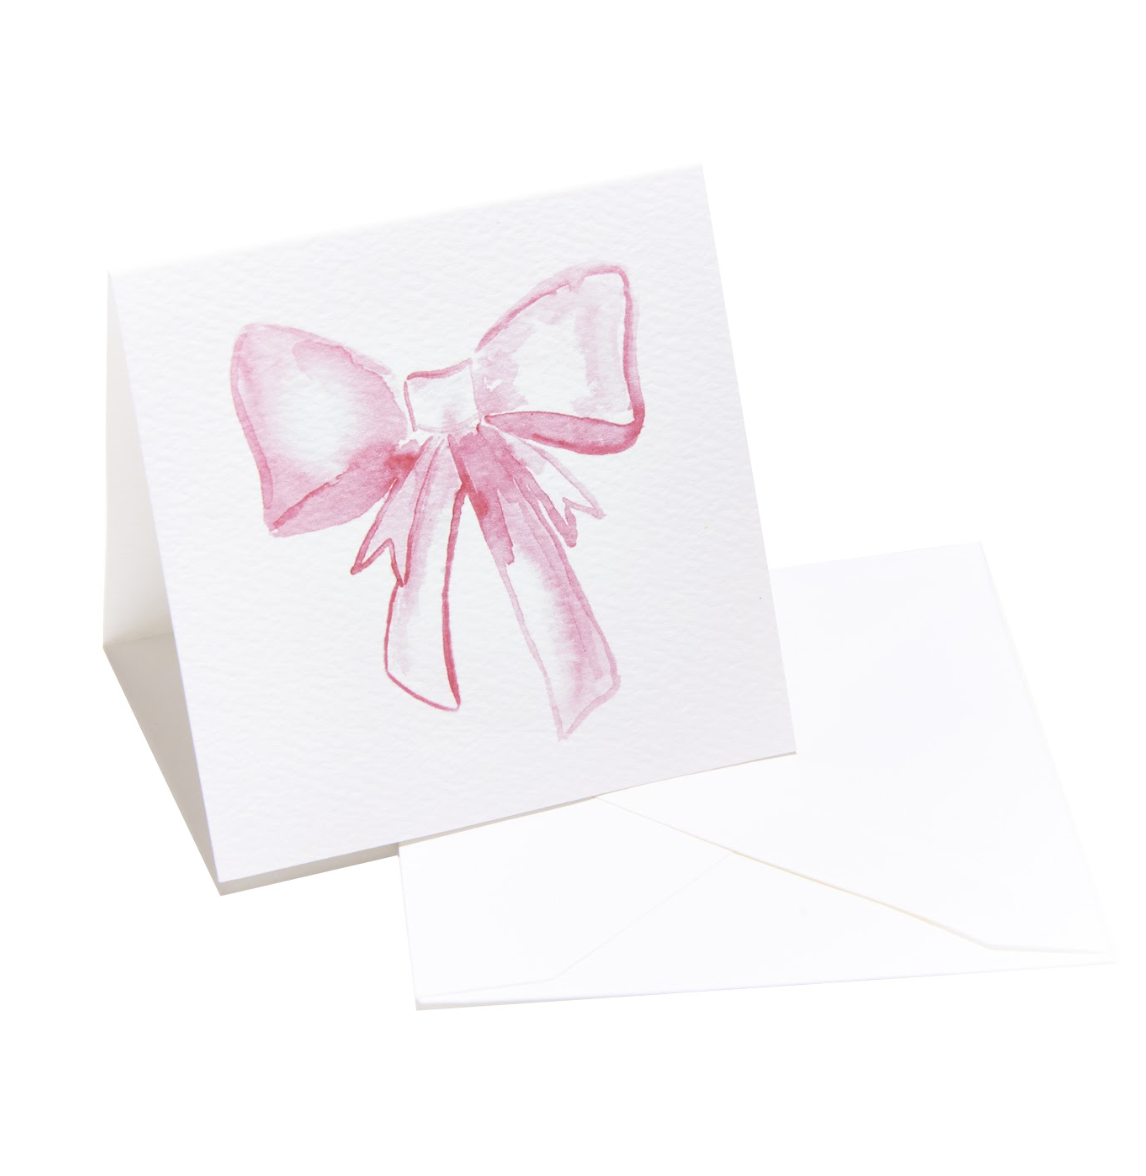 Enclosure Card, Pink Bow